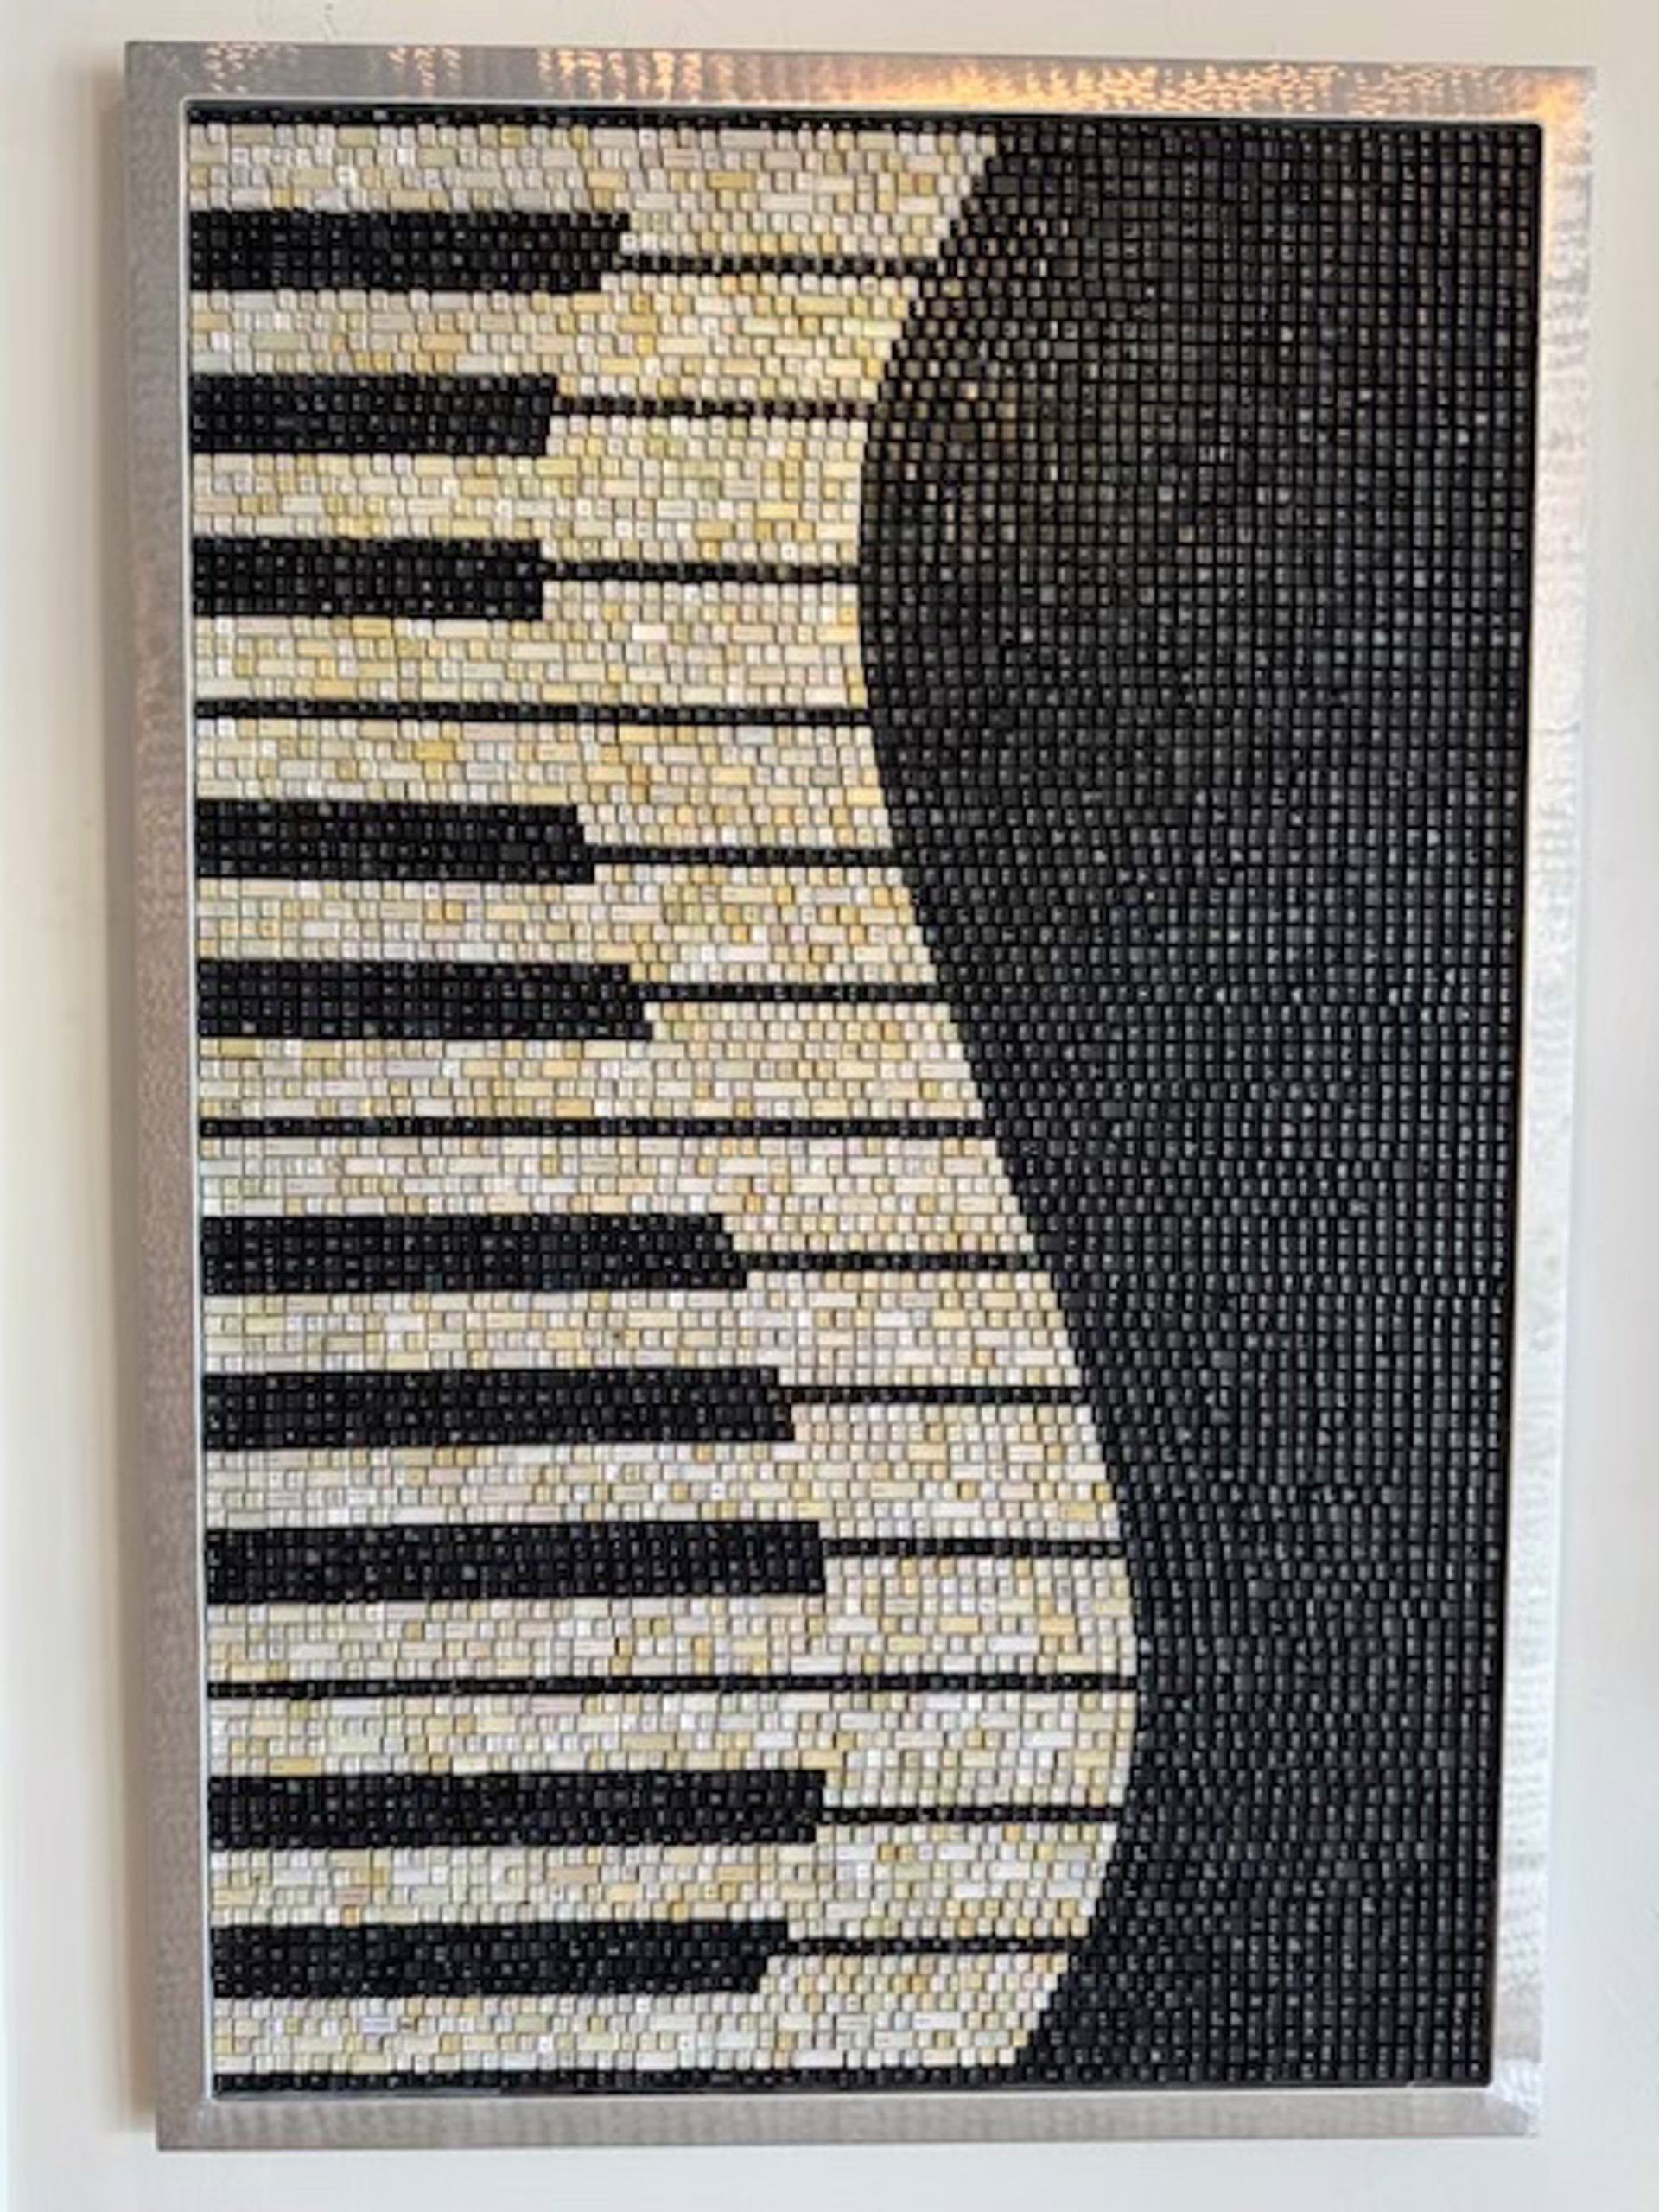 Piano Keys by Doug Powell